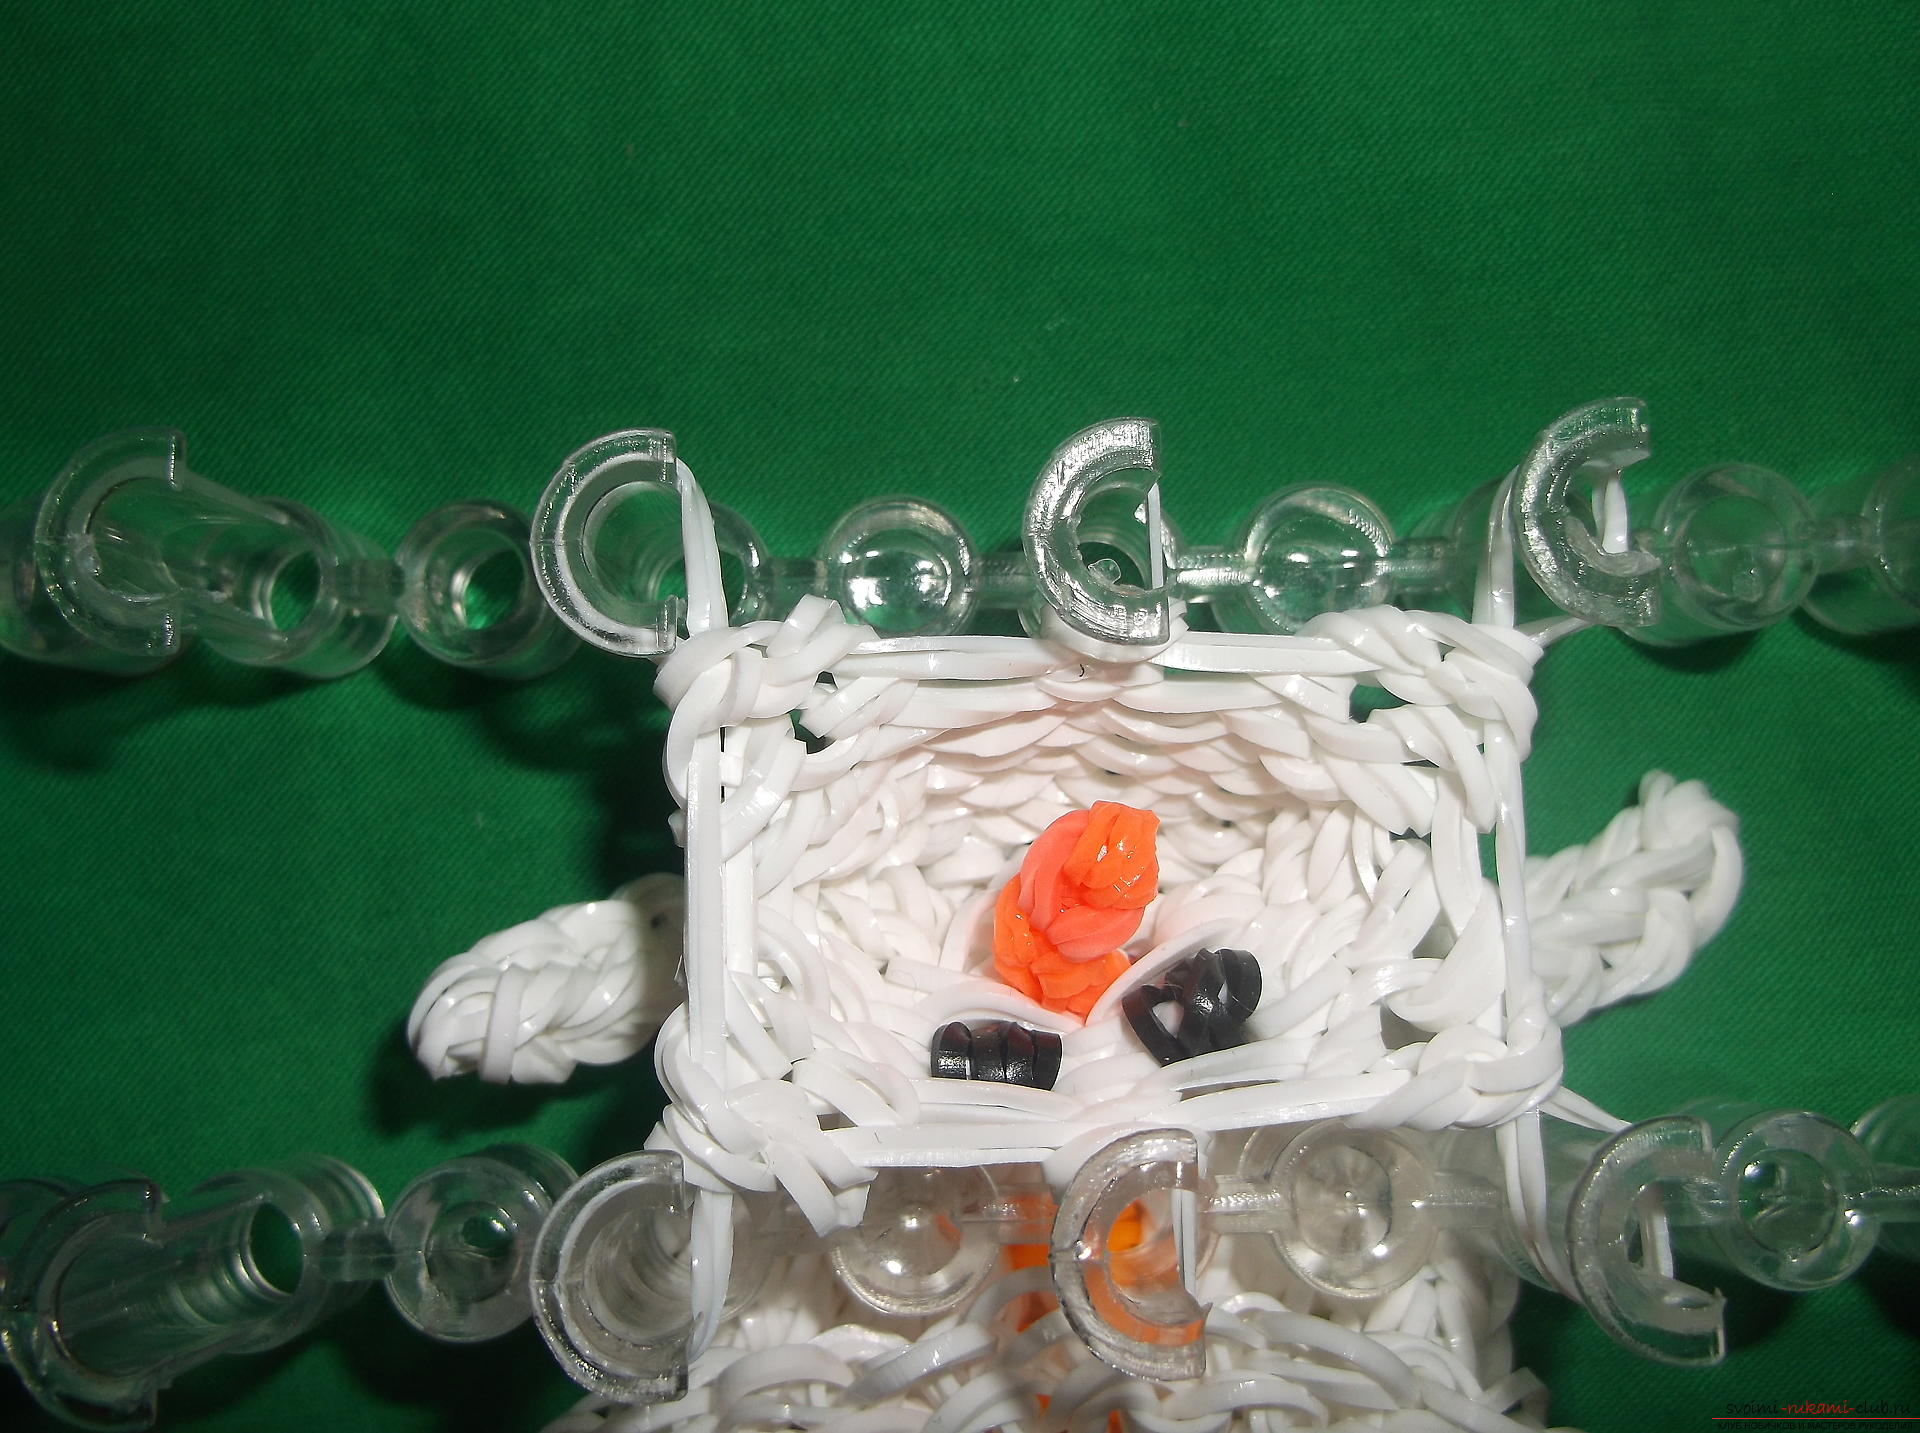 Фото к уроку по плетению из резиночек снеговичка к новогодним праздникам. Фото №12